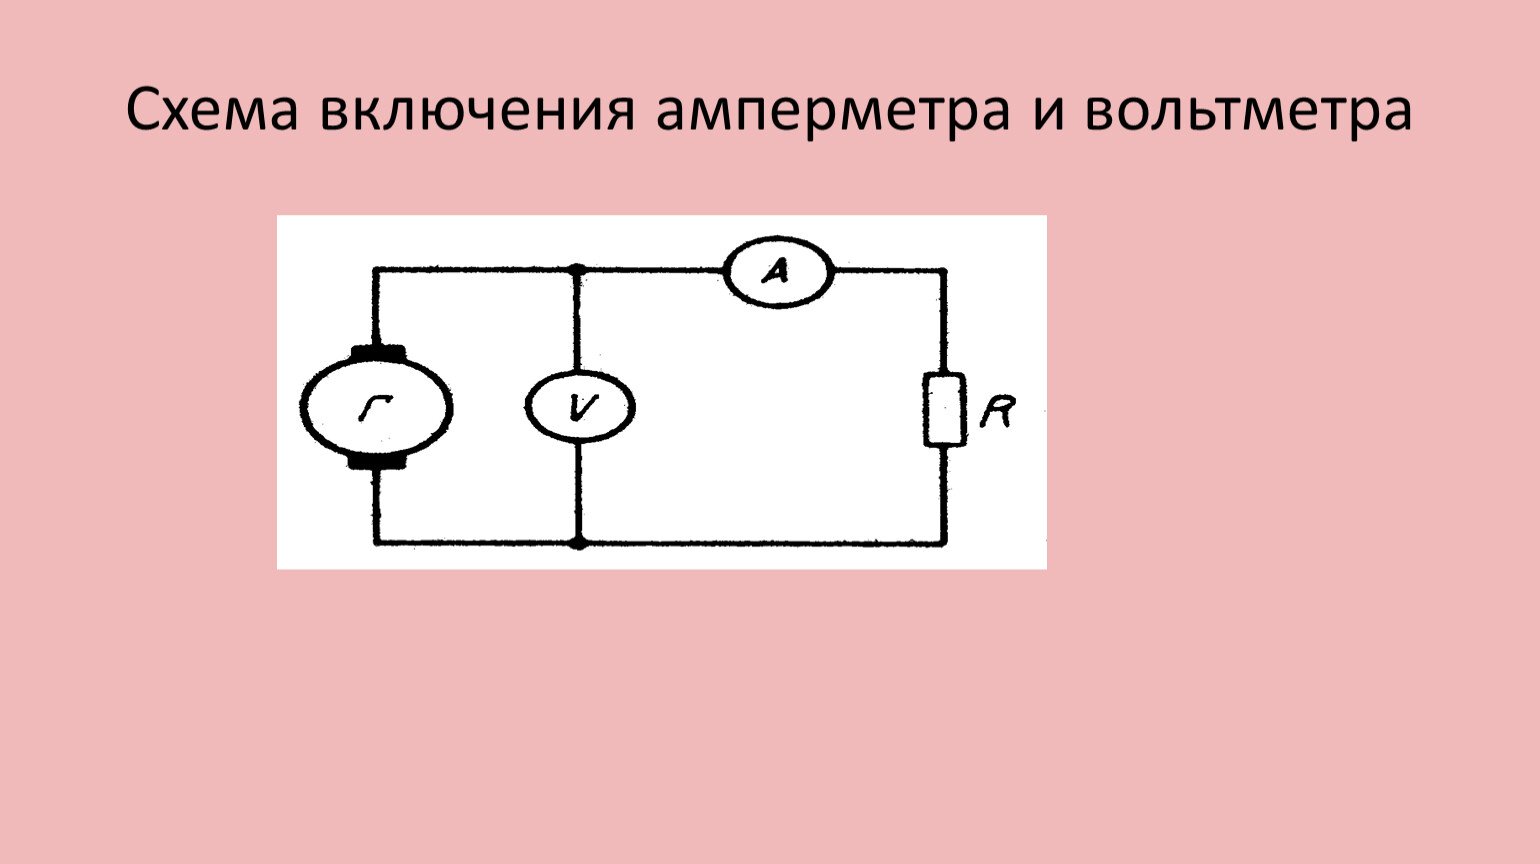 Схема включения амперметра. Параллельное включение амперметра. Включатель амперметра с 2 лампами в чертеже. Прибор измерительный физика схема.